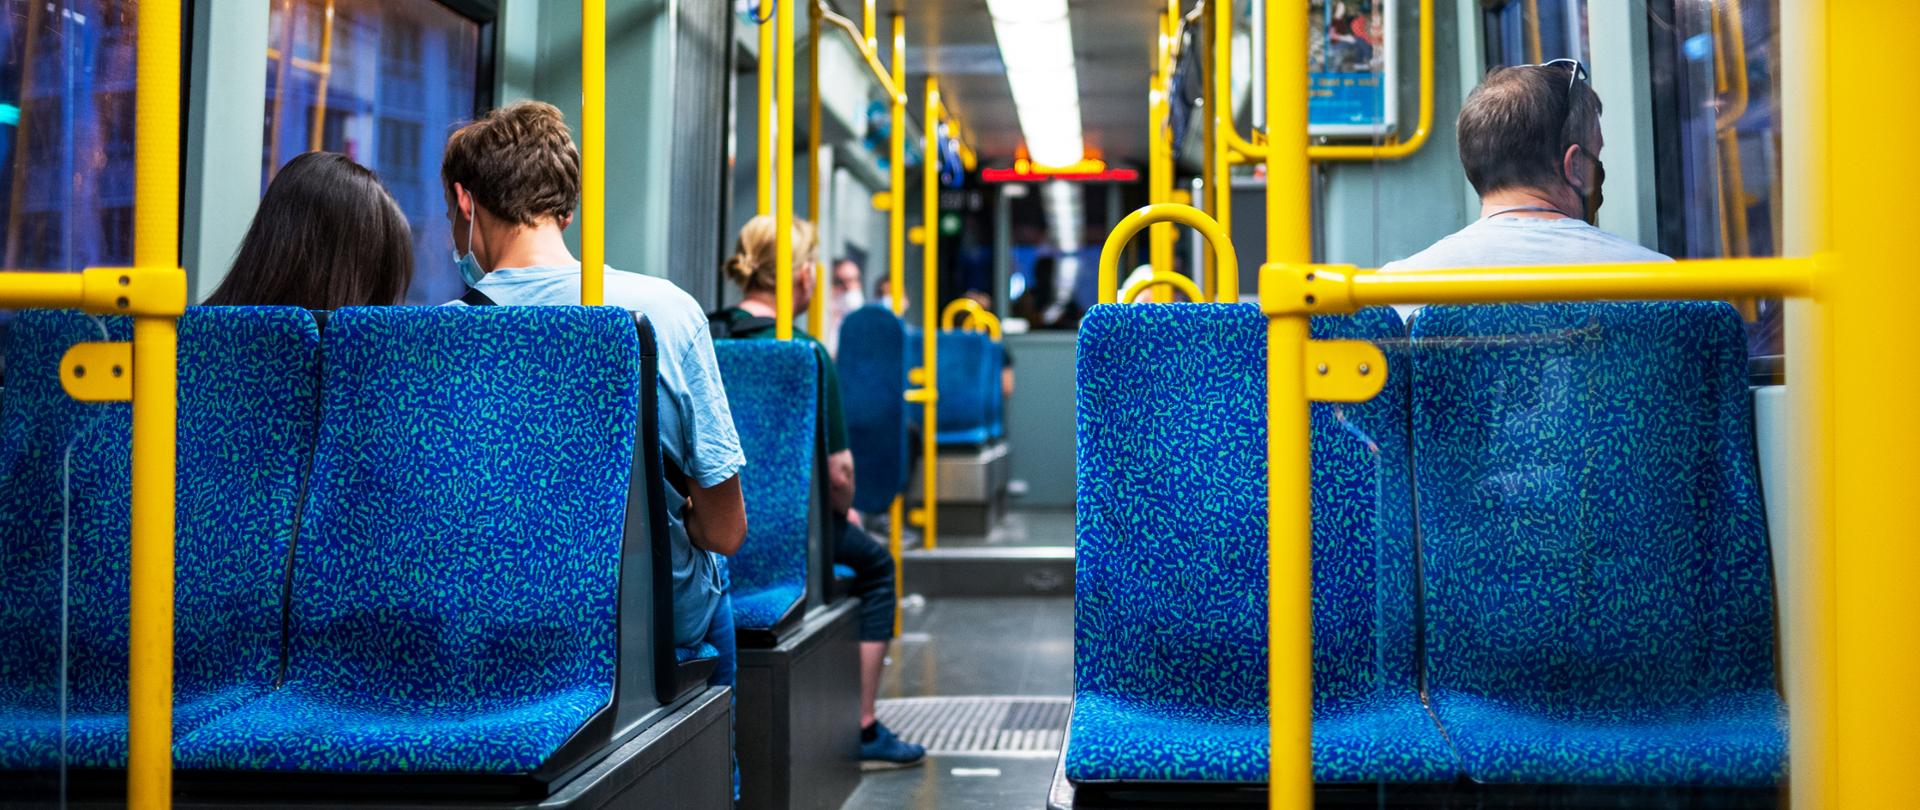 Widok wnętrza autobusu, niebieskie fotel, żółte poręcze. Na siedzenia cztery osoby spoglądające w okno, plecami do widza.